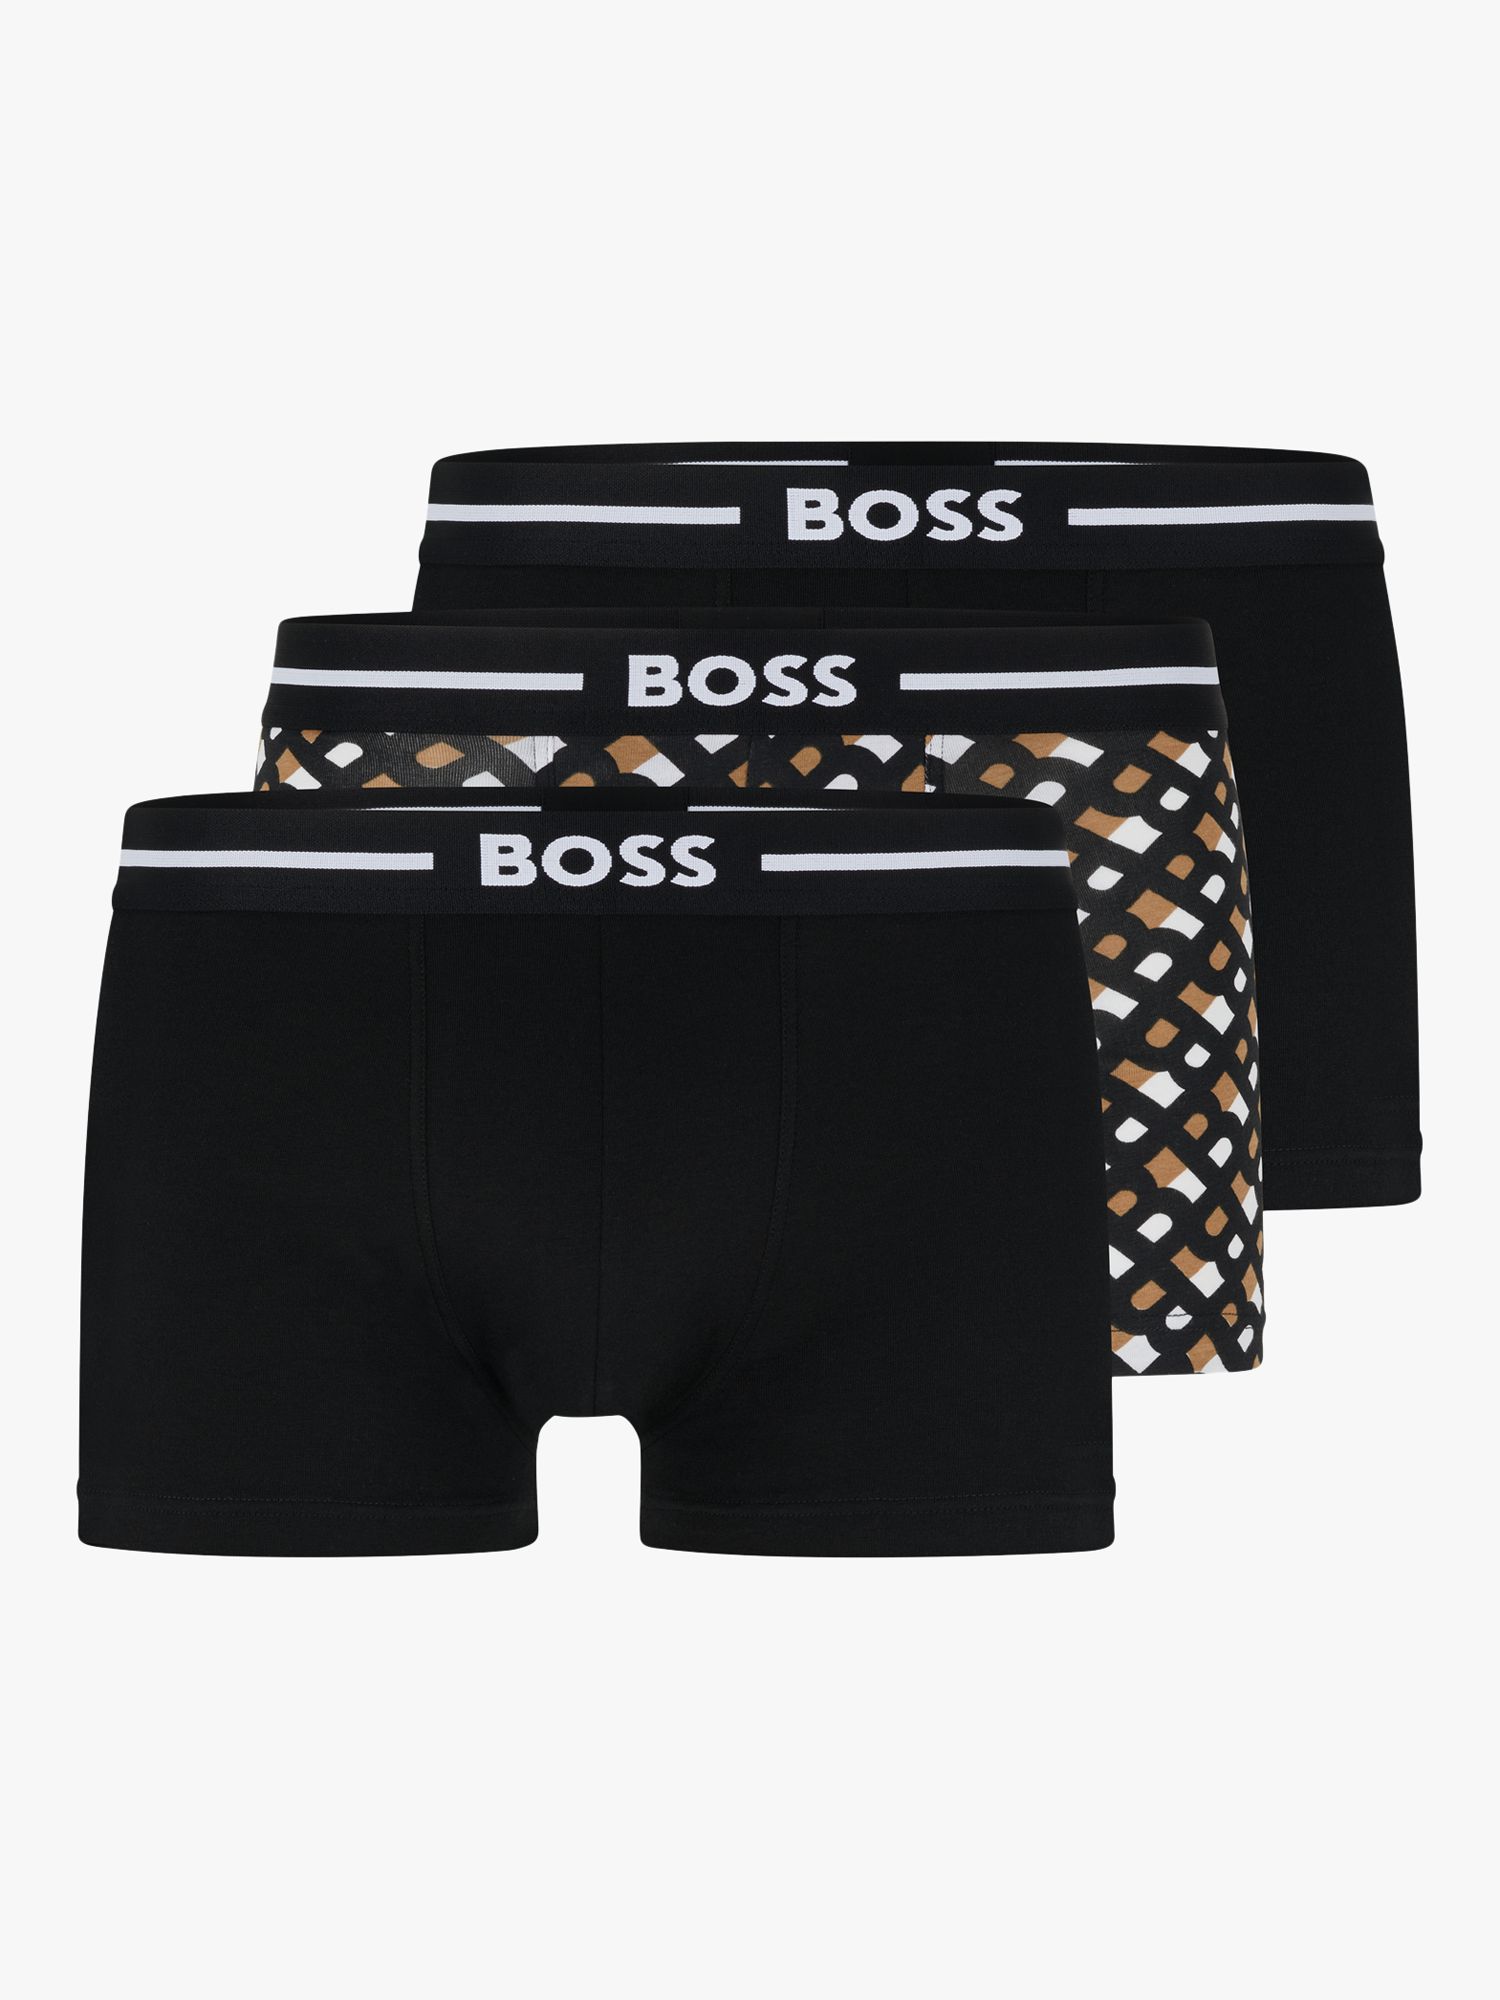 BOSS Bold Cotton Logo Waistband Trunks, Pack of 3, Beige/Black/White at ...